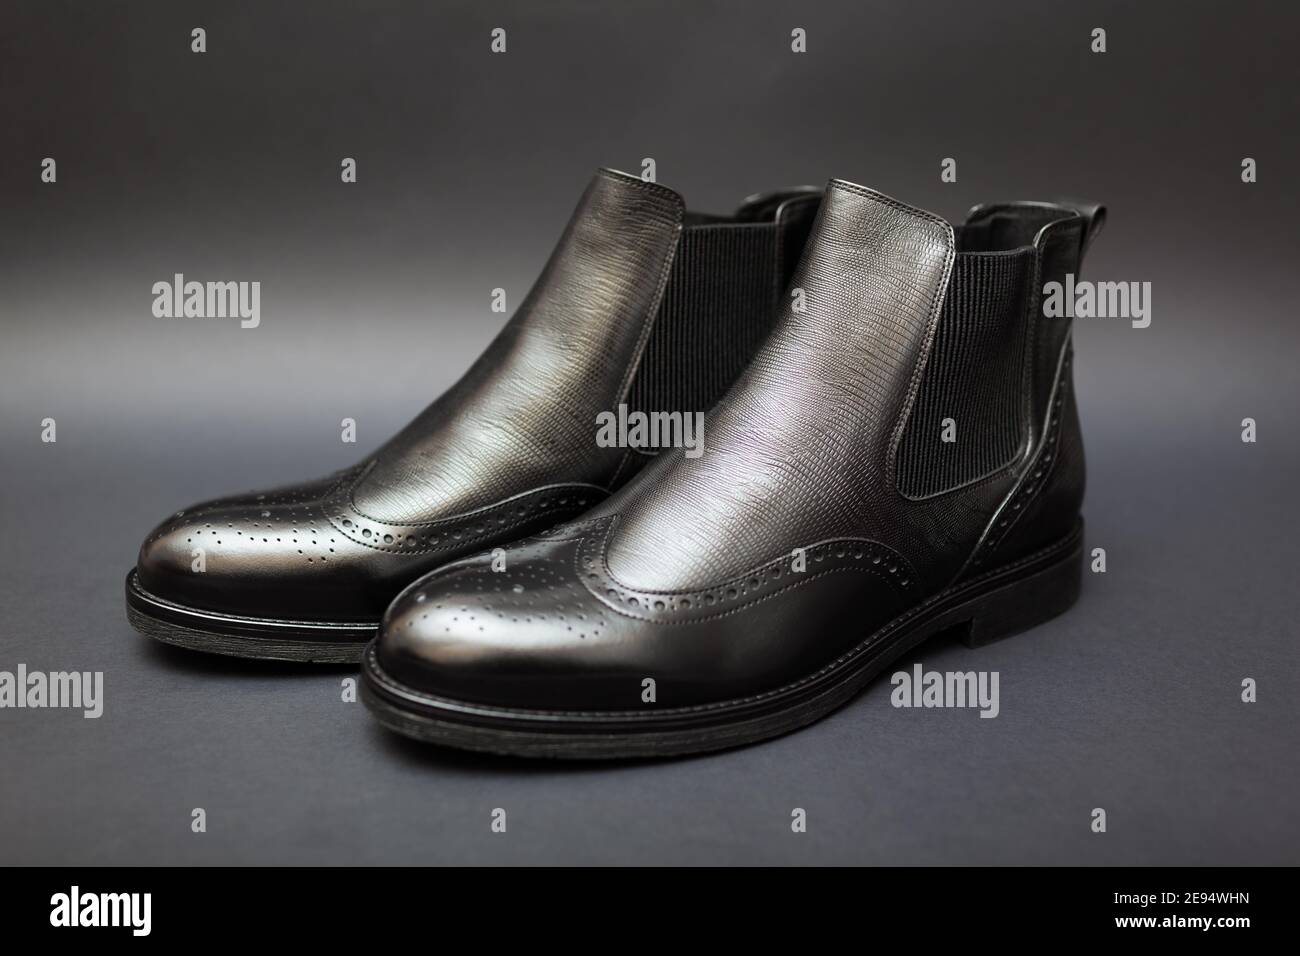 Schuhe, chelsea Lederstiefel für Herren. Herren Winter-, Herbst- oder  Frühlingsmode. Schwarze Schuhe mit Perforation auf schwarzem Hintergrund.  Verkauf Stockfotografie - Alamy